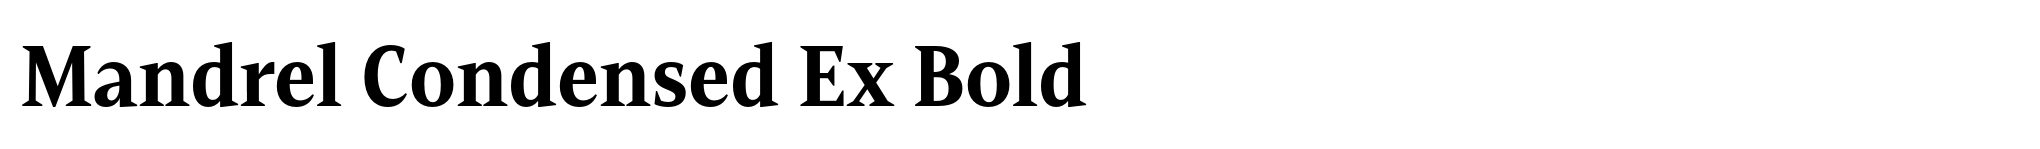 Mandrel Condensed Ex Bold image